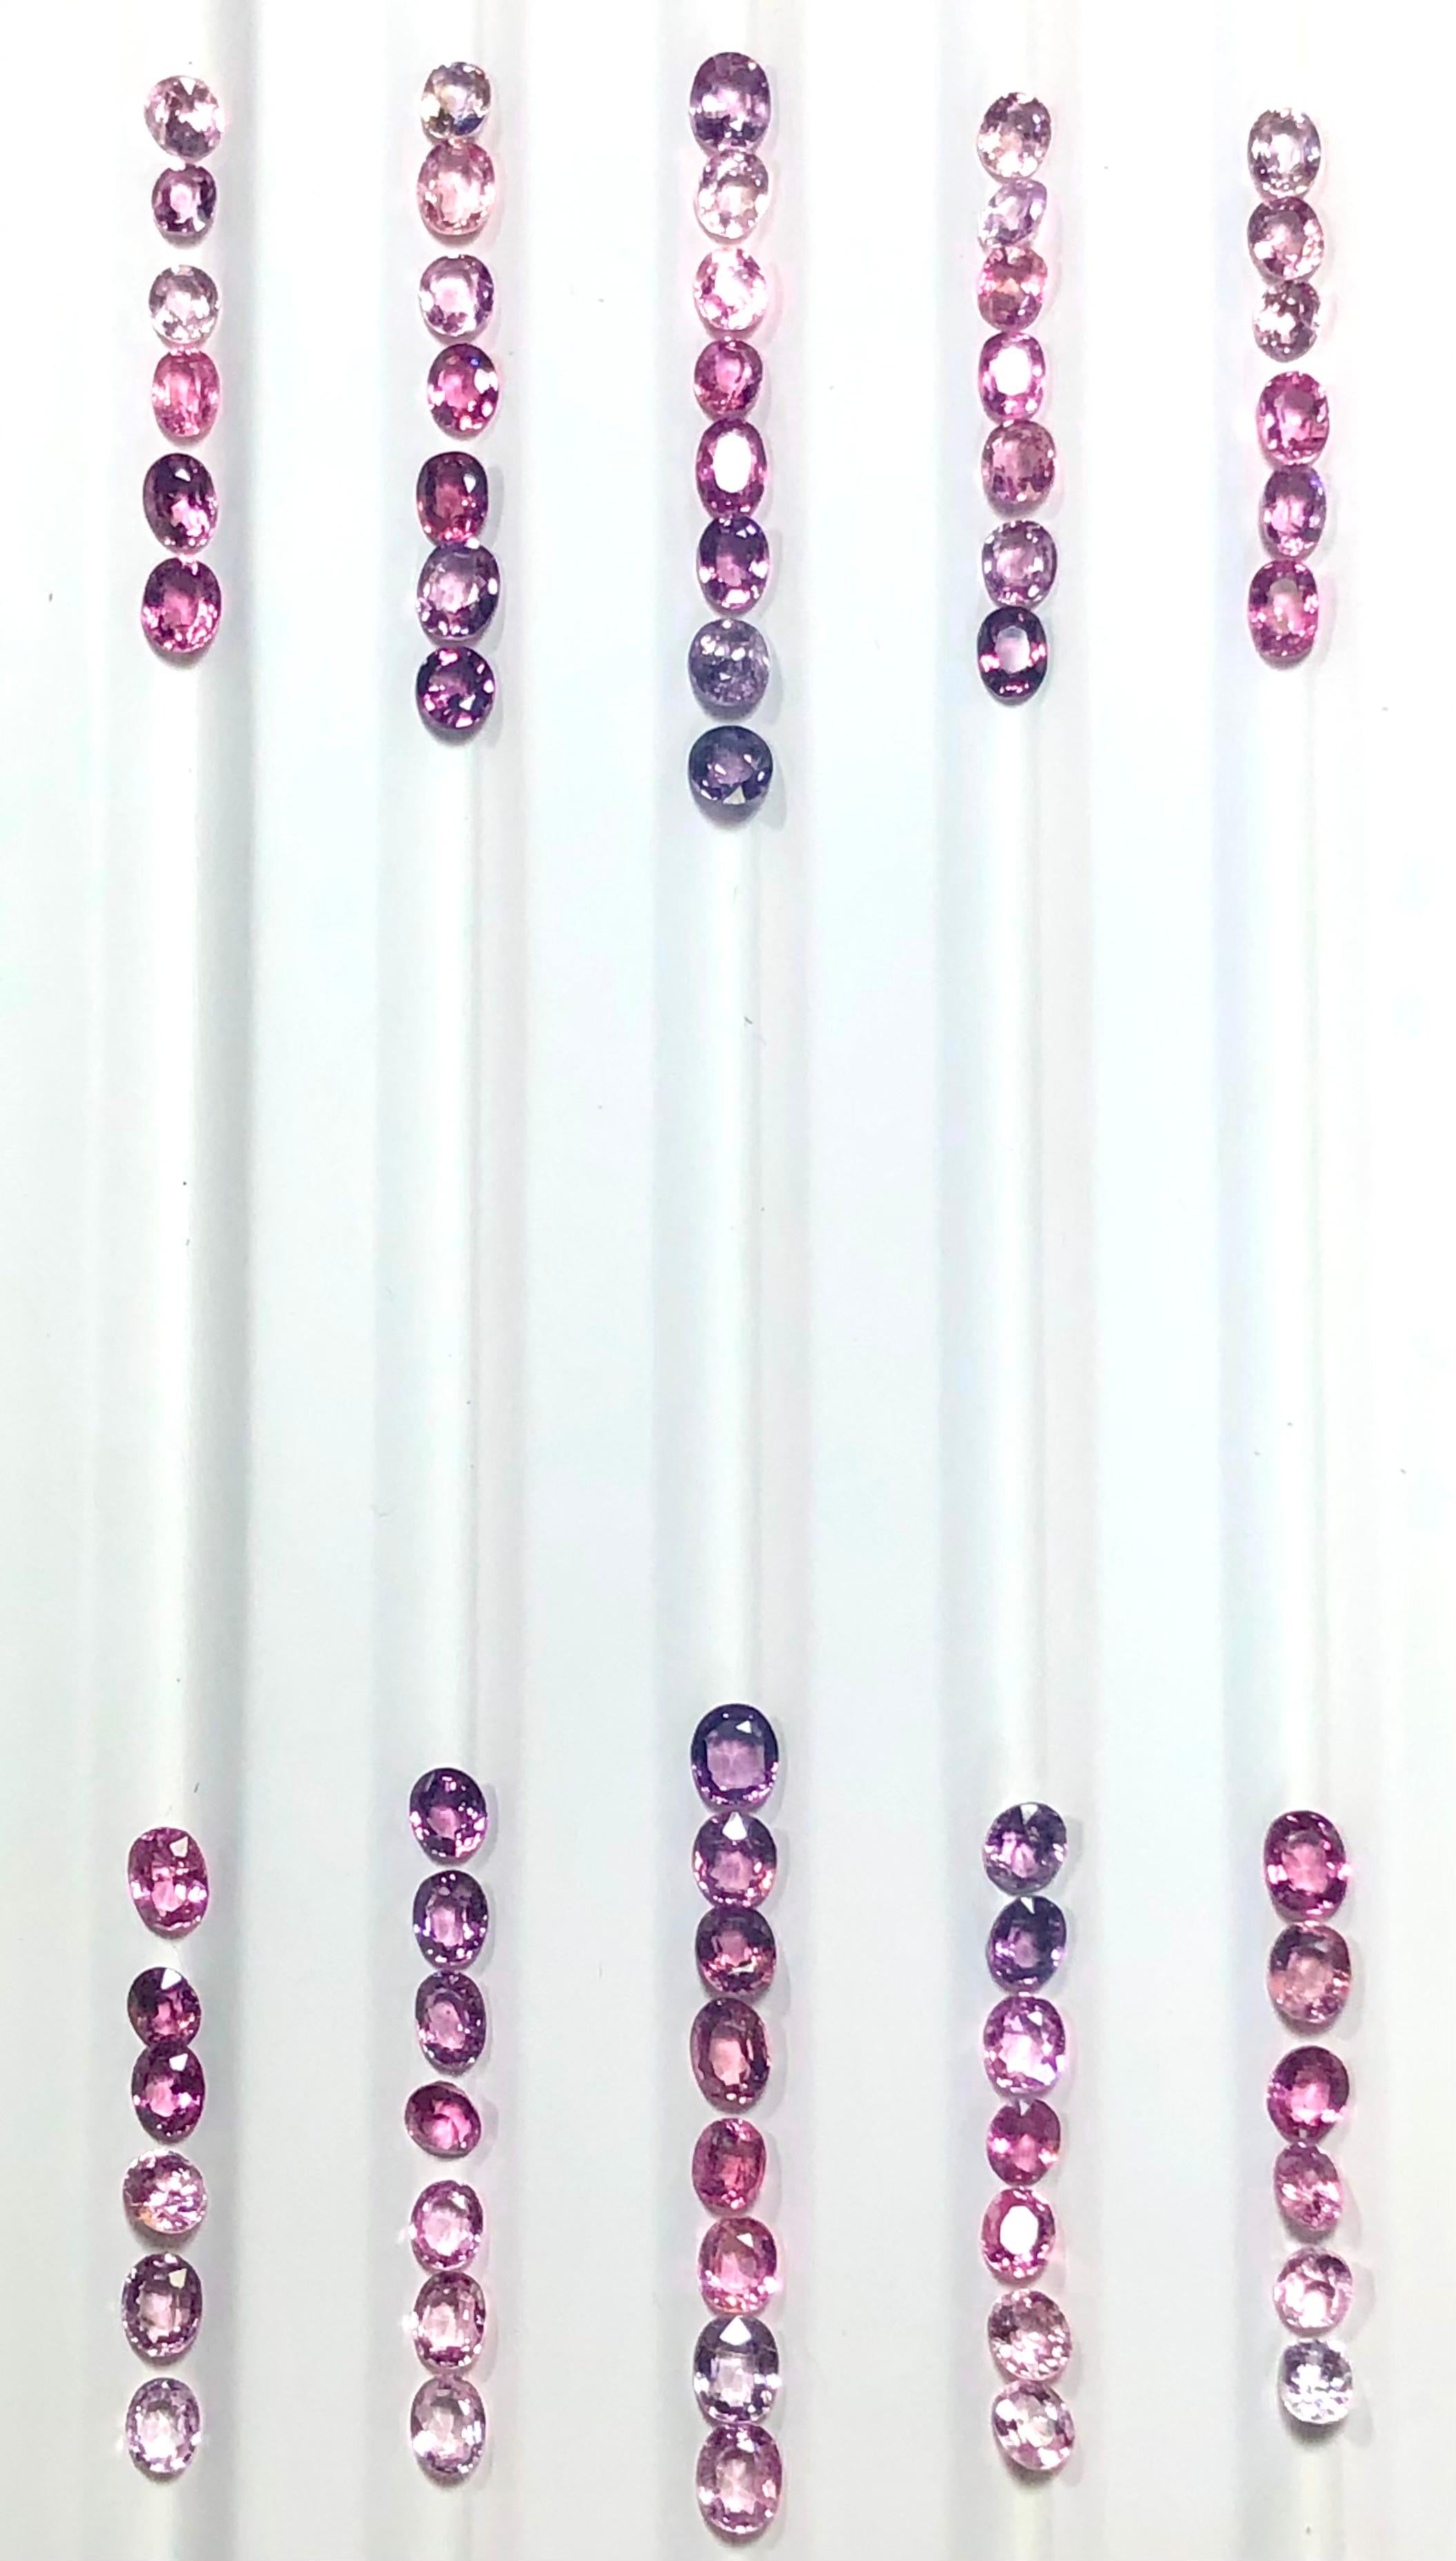 Fancy Oval Wasserfall-Set aus Spinell mit losen Edelsteinen
Spinell fancy 100% natürliche ovale lose Edelsteine gesetzt Palette von Babyrosa bis hot pink und violett bis lila. Der Satz wiegt 54.50 Karat und wird lose als sensationelle